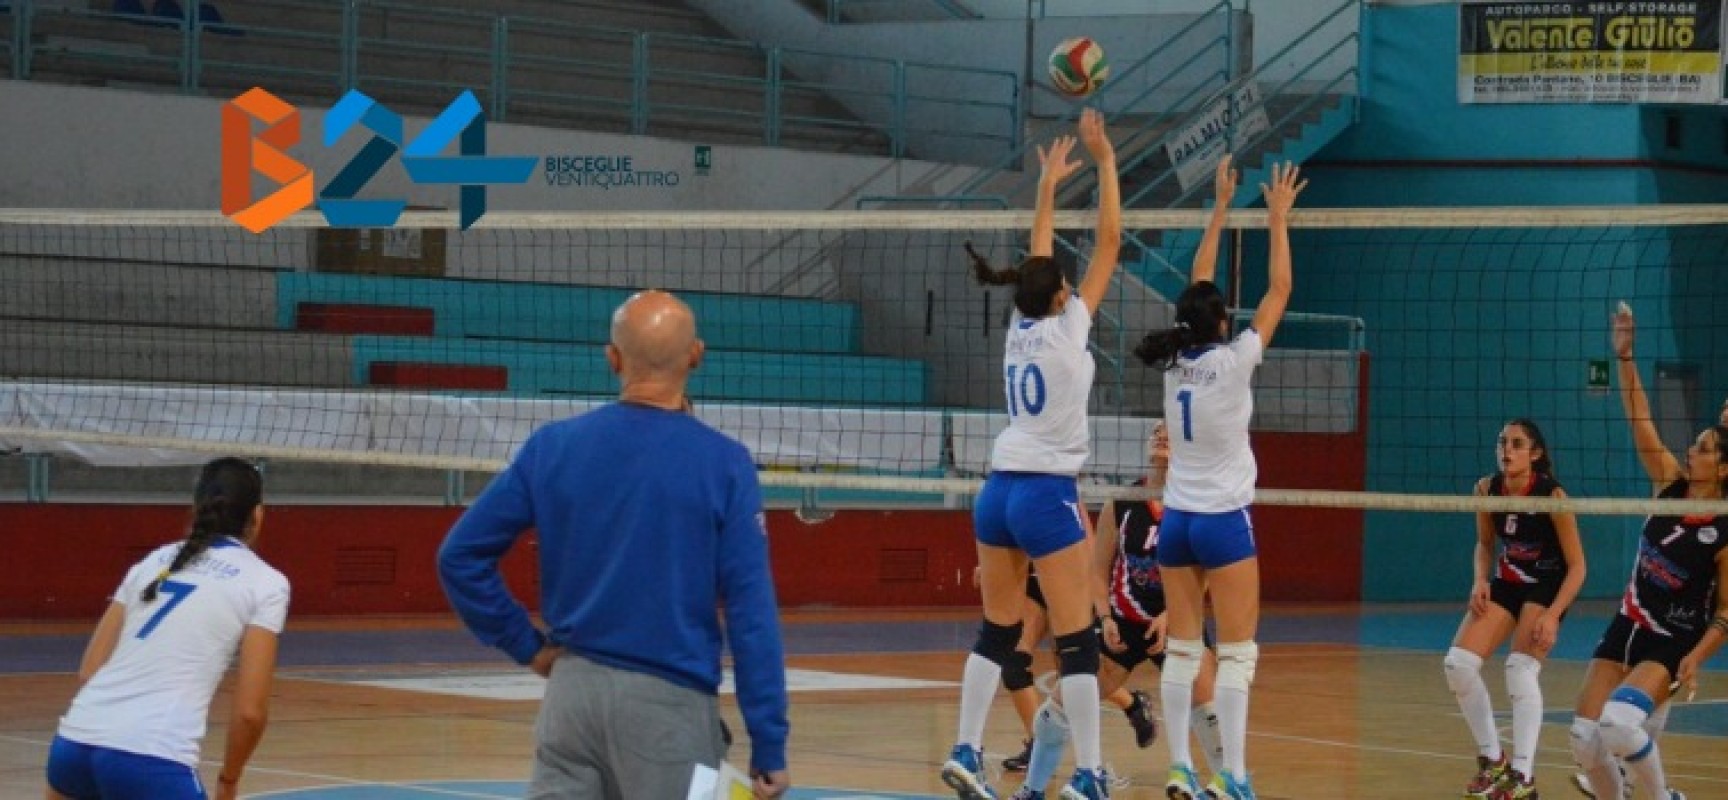 Sportilia Volley, è quasi fatta: ancora un punto ed è ai playoff